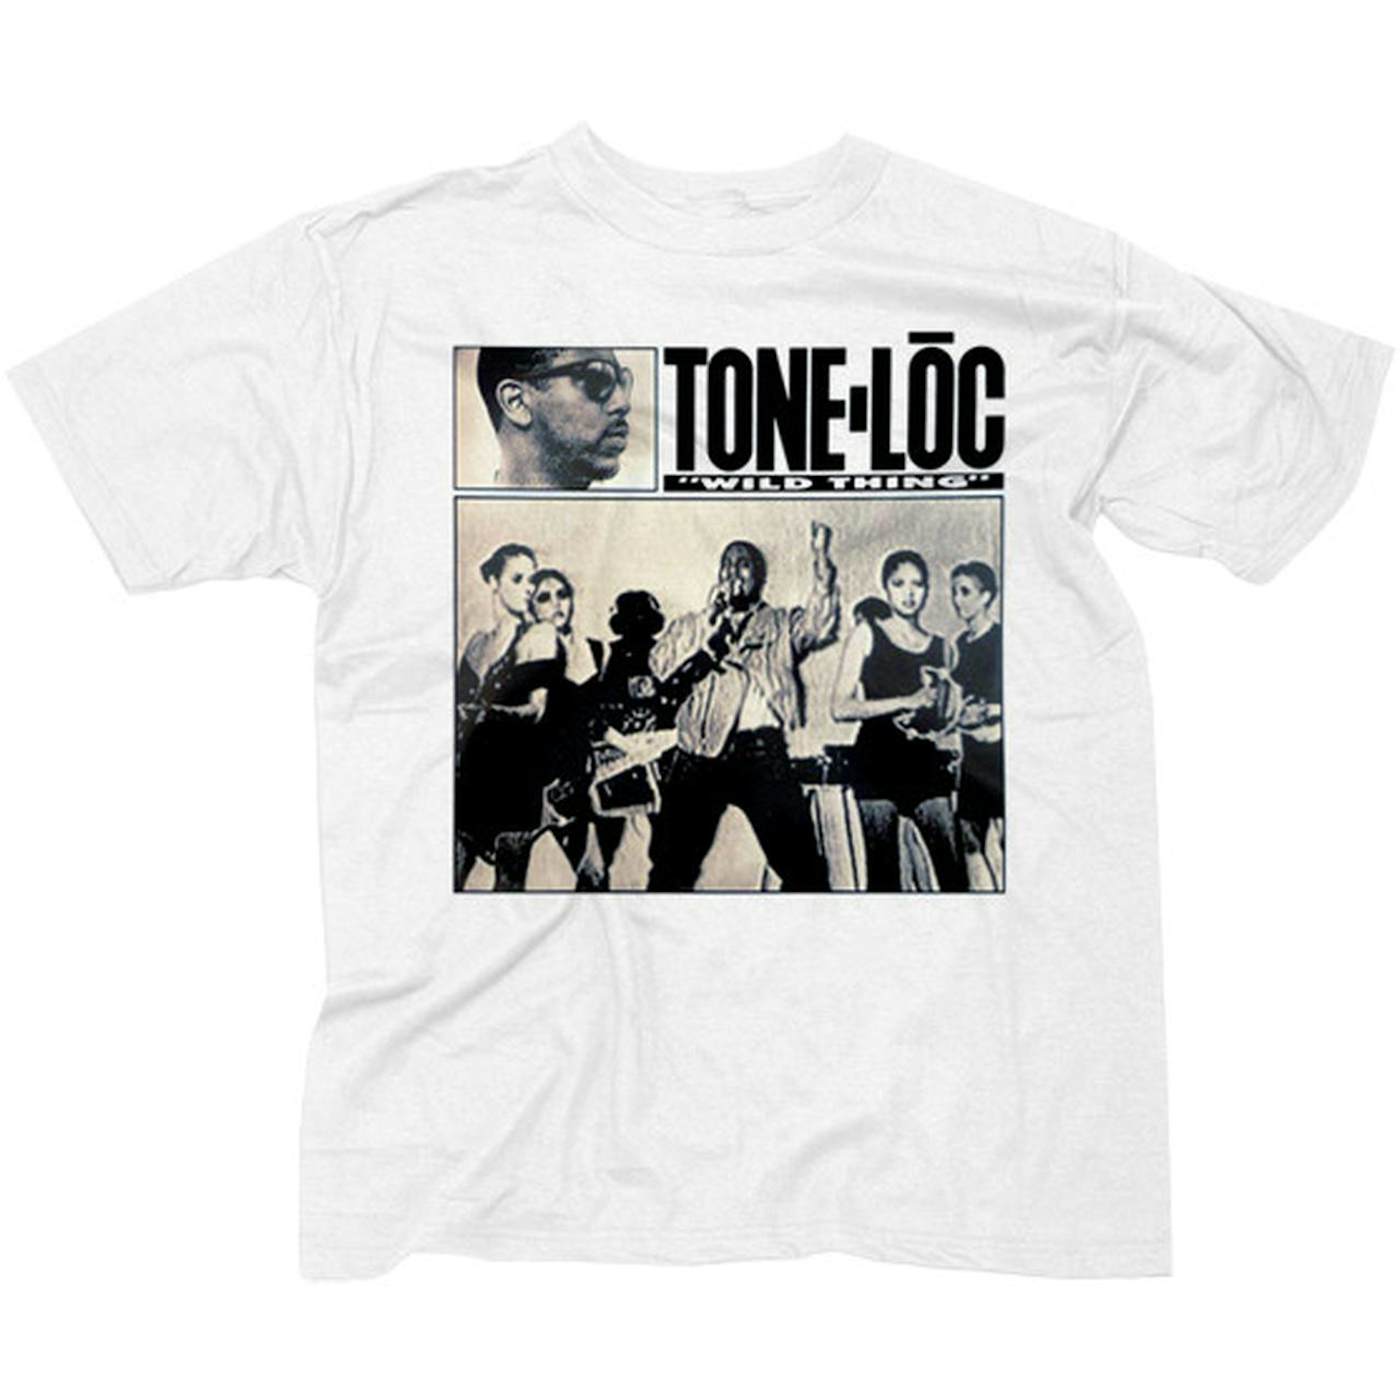 Tone-Loc "Wild Thing" Men's T-shirt